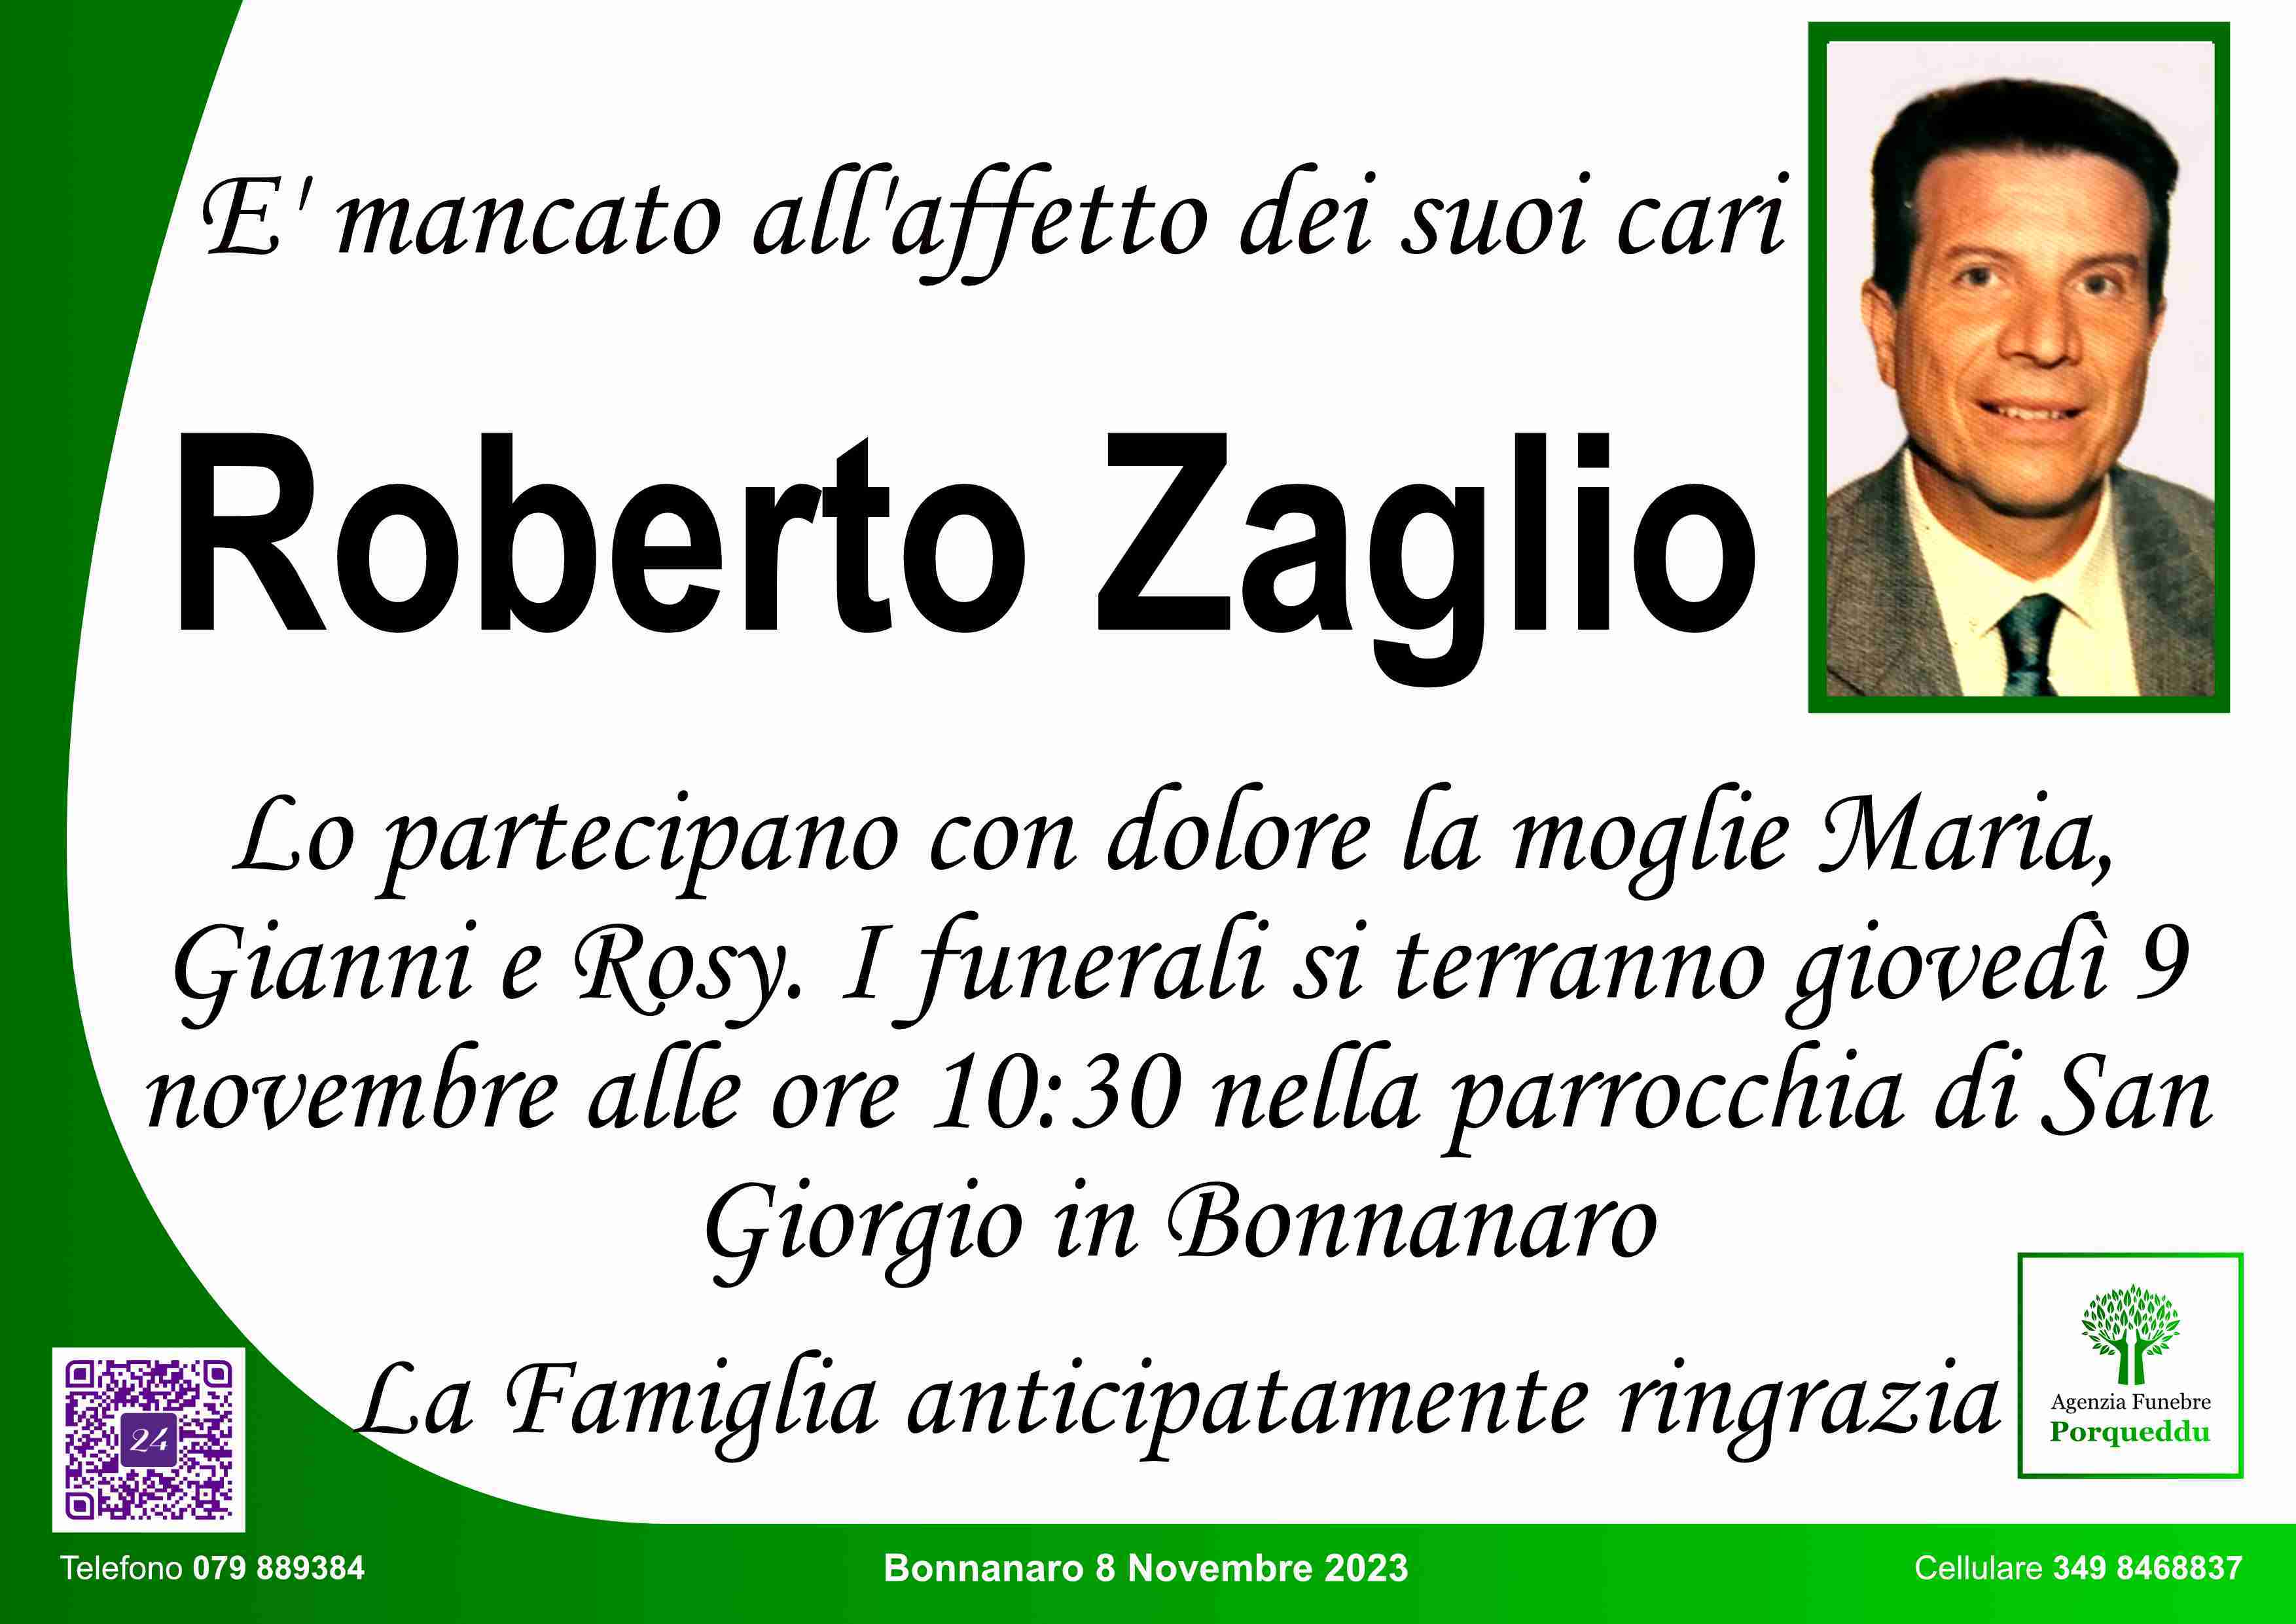 Roberto Zaglio